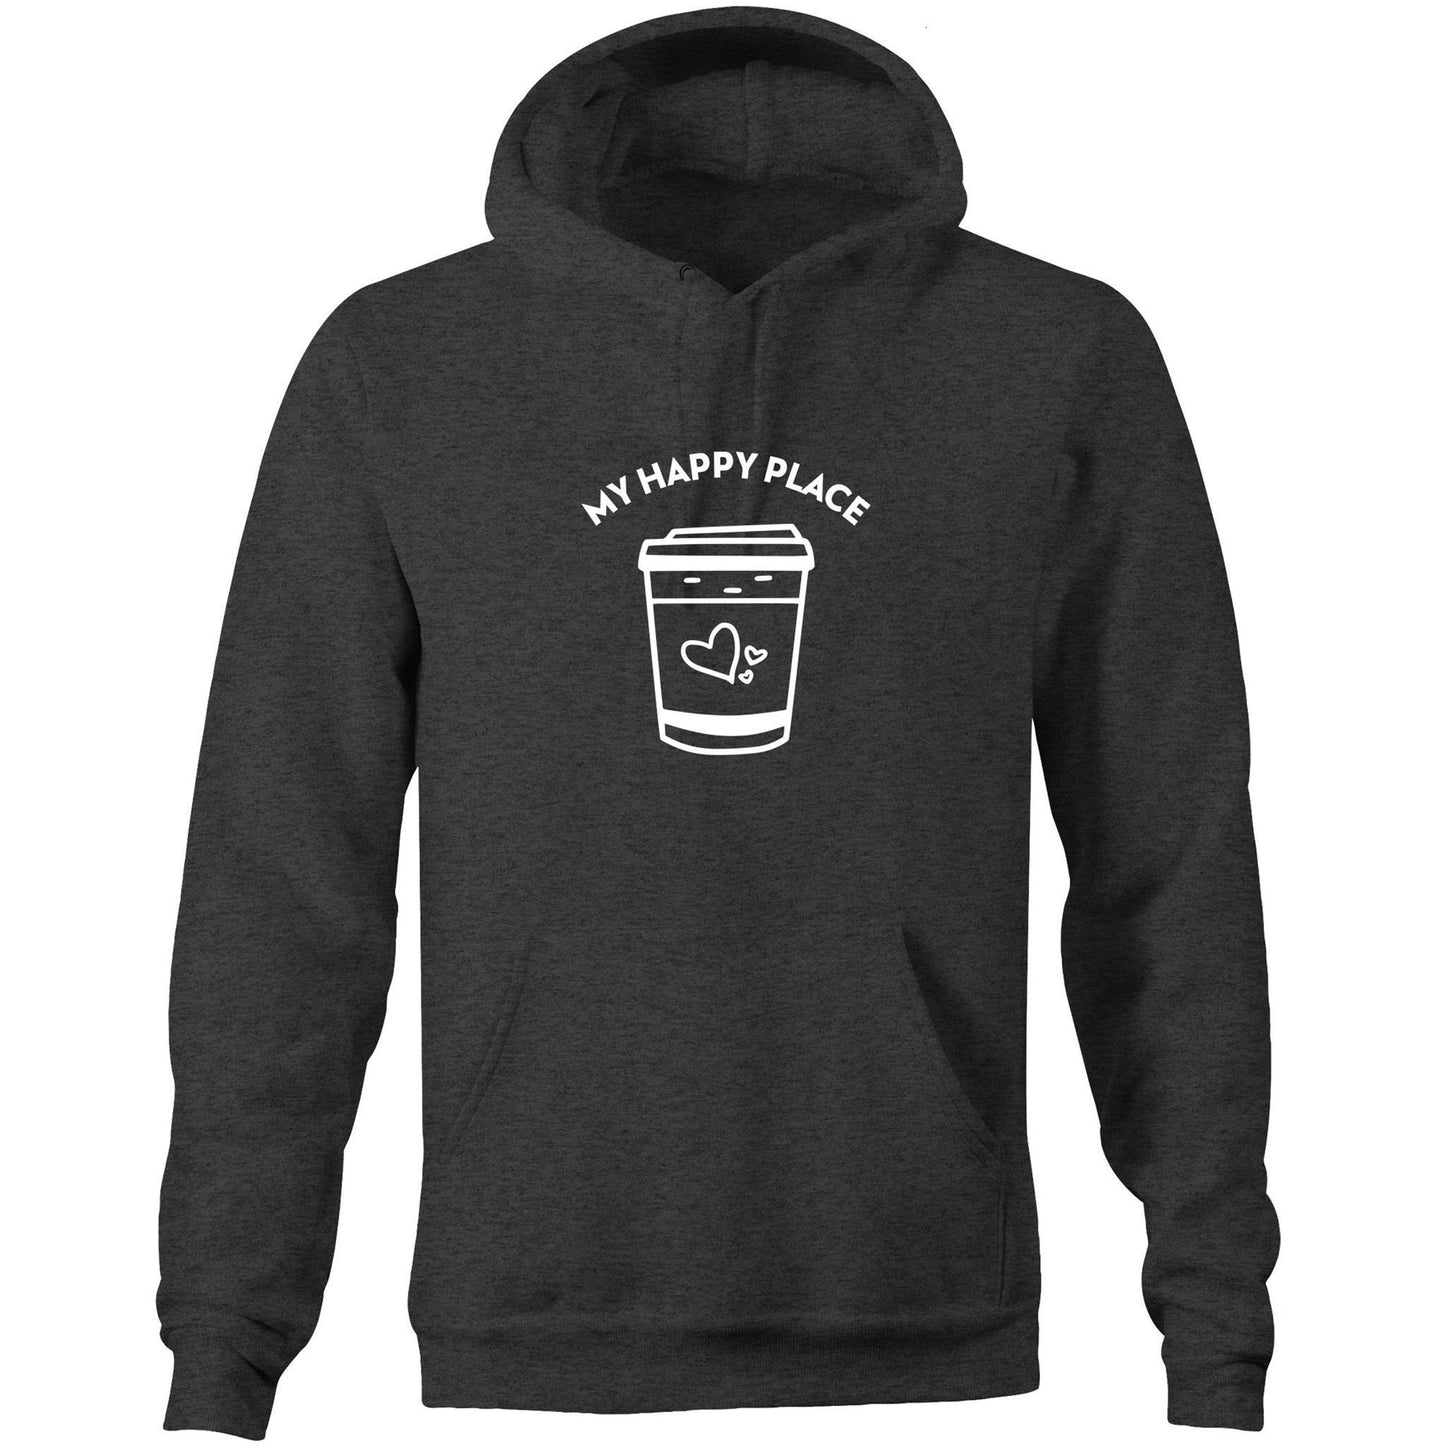 My Happy Place - Pocket Hoodie Sweatshirt Asphalt Marle Hoodie Coffee Mens Womens